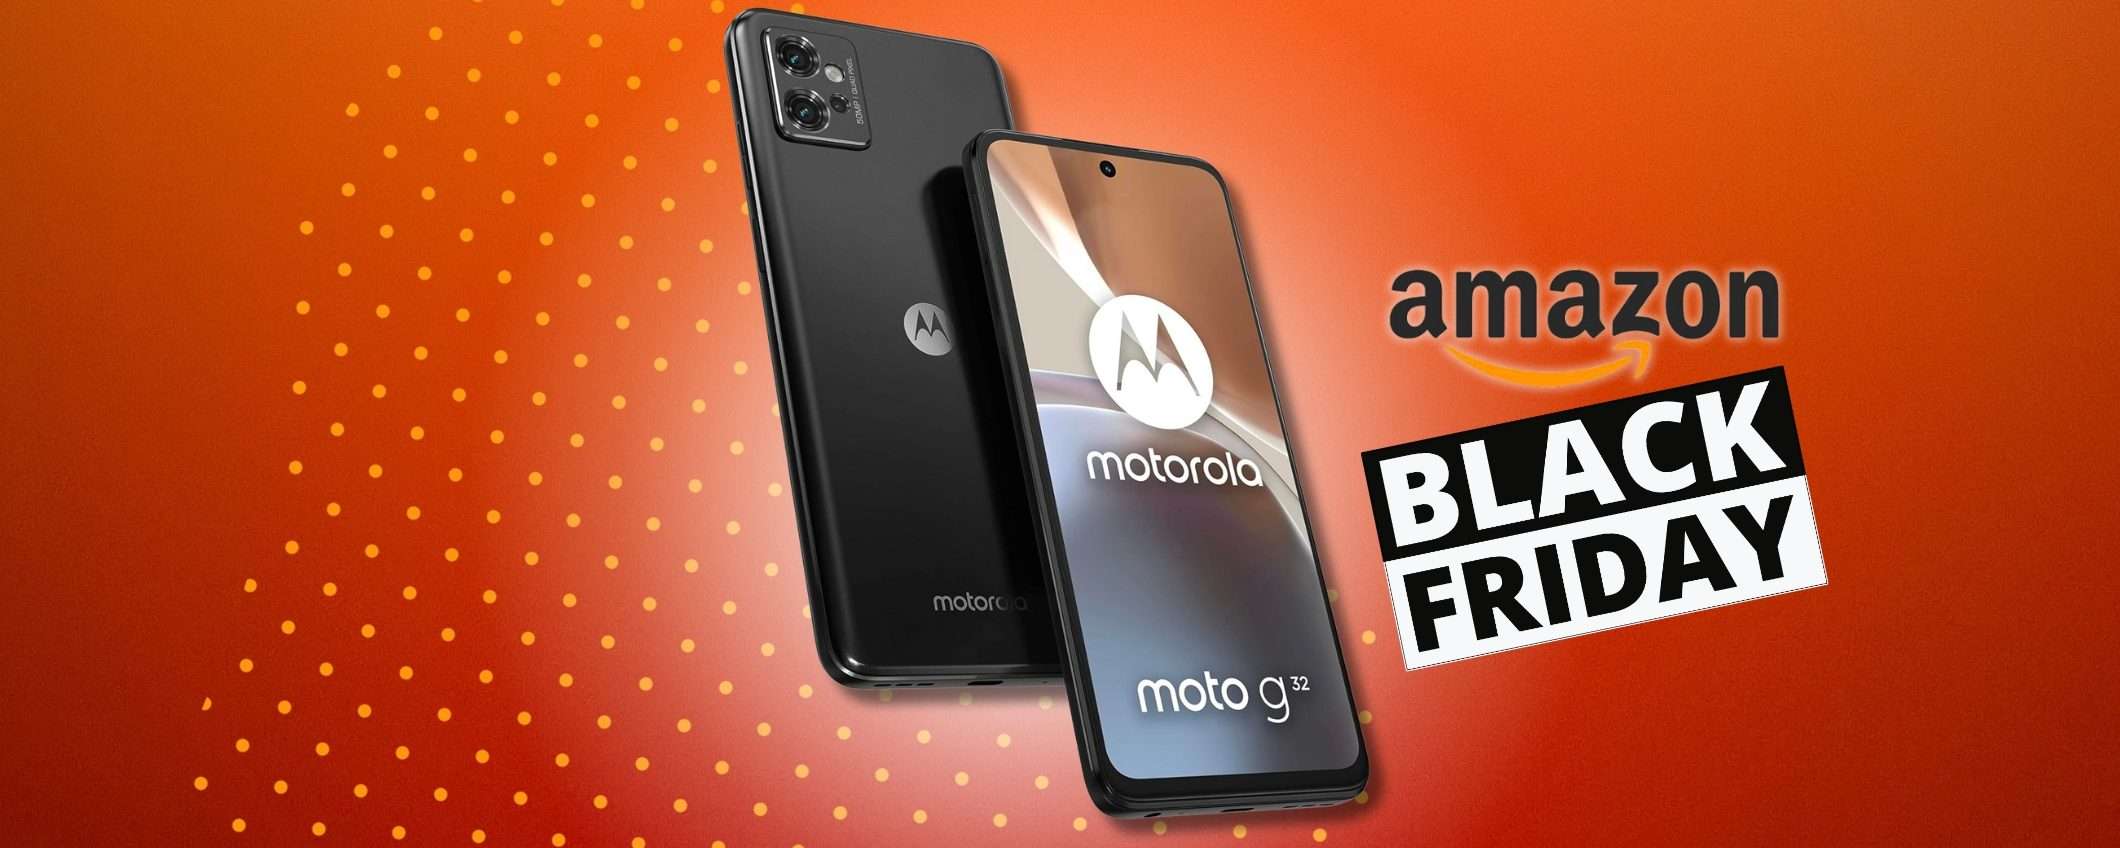 Motorola Moto G32, prezzo da SVENDITA sullo smartphone Android (45%)